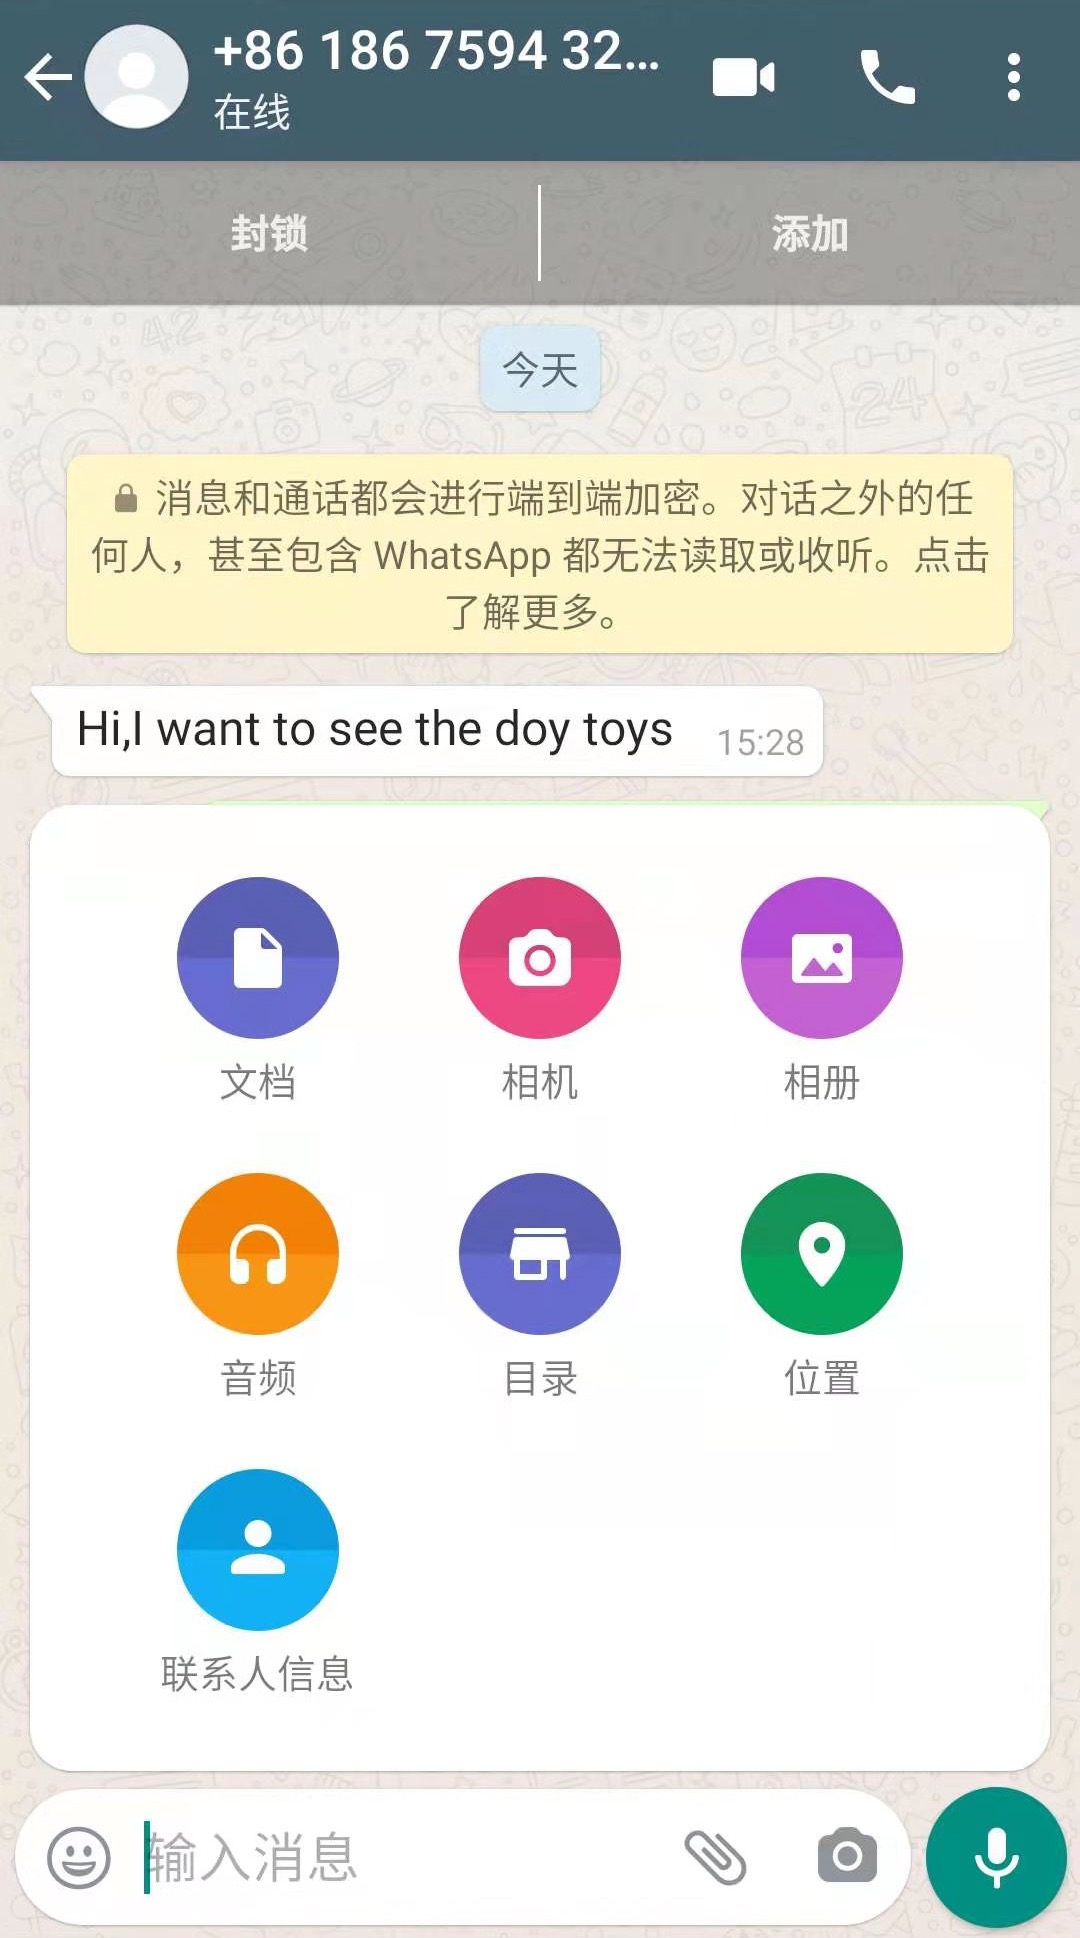 关于whatsapp在中国怎么才能用的信息